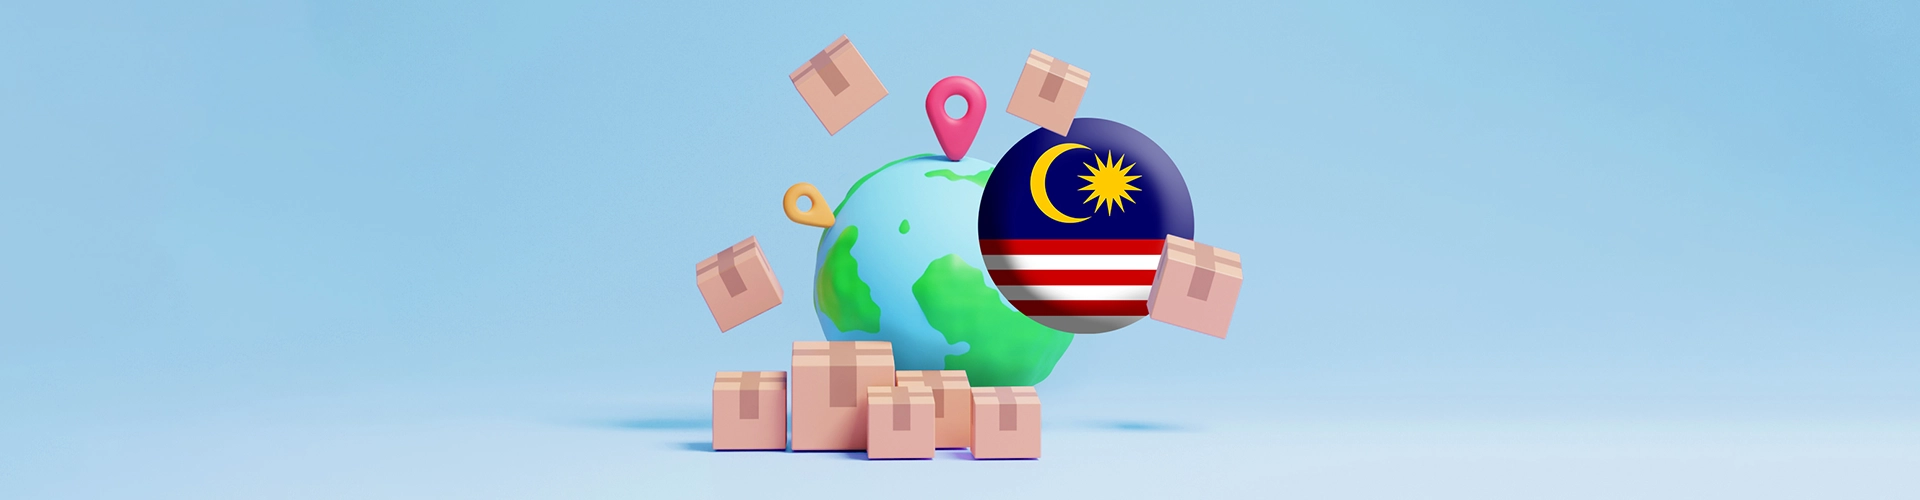 حمل بار به مالزی و بالعکس